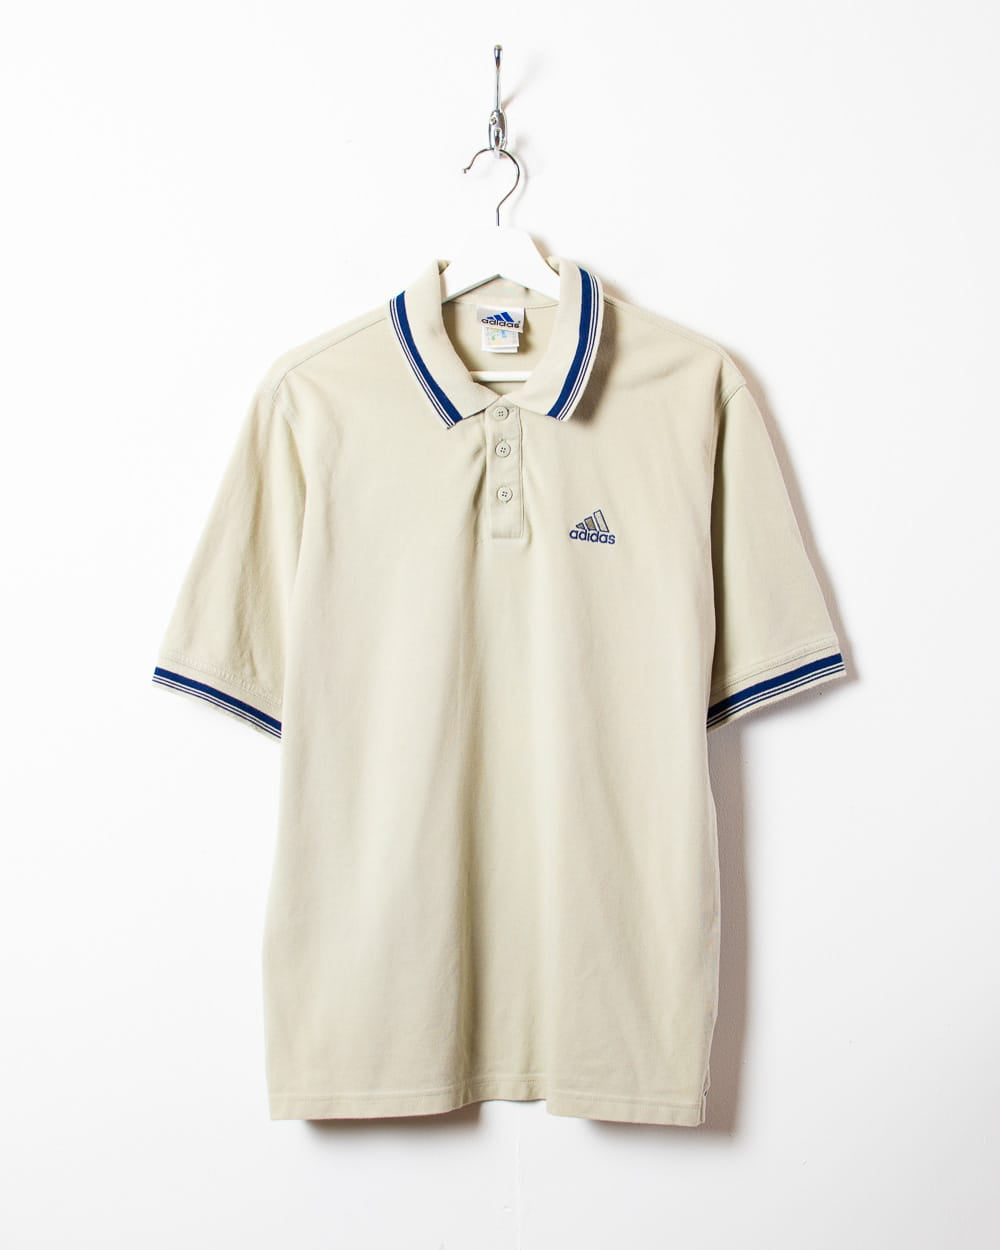 Neutral Adidas Polo Shirt - Medium